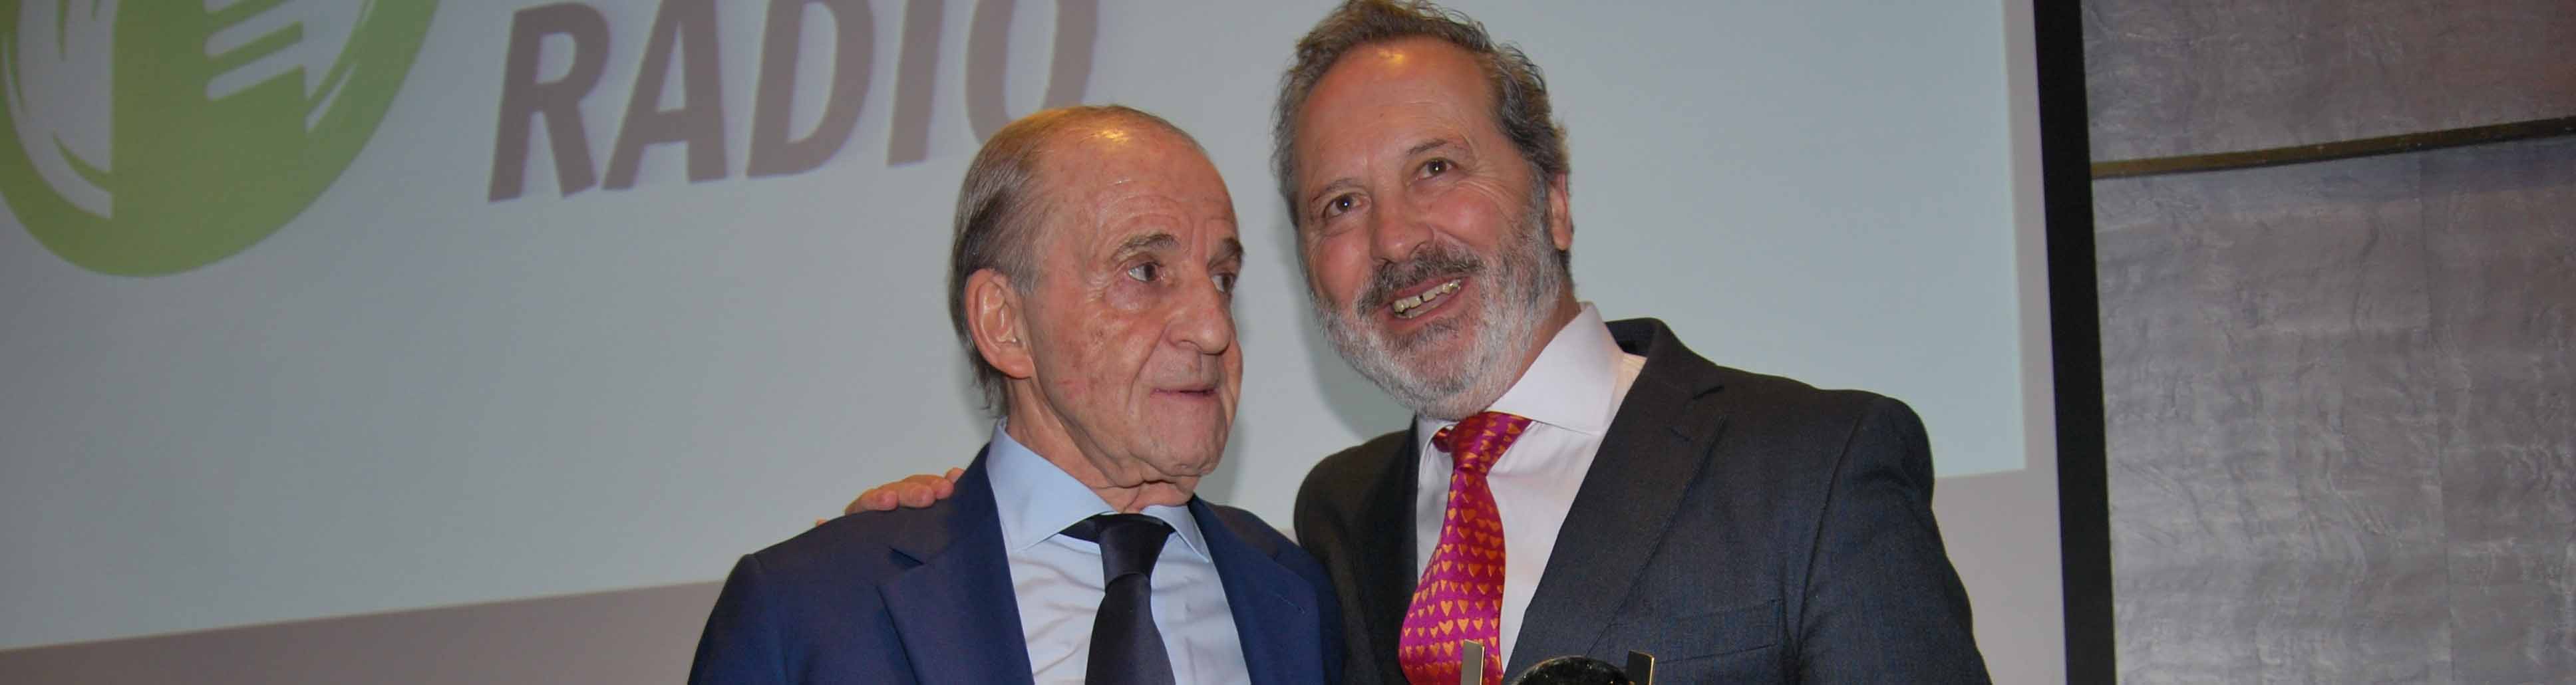 José Boje, director de COPE Utrera, junto a la leyenda de la radio José María García